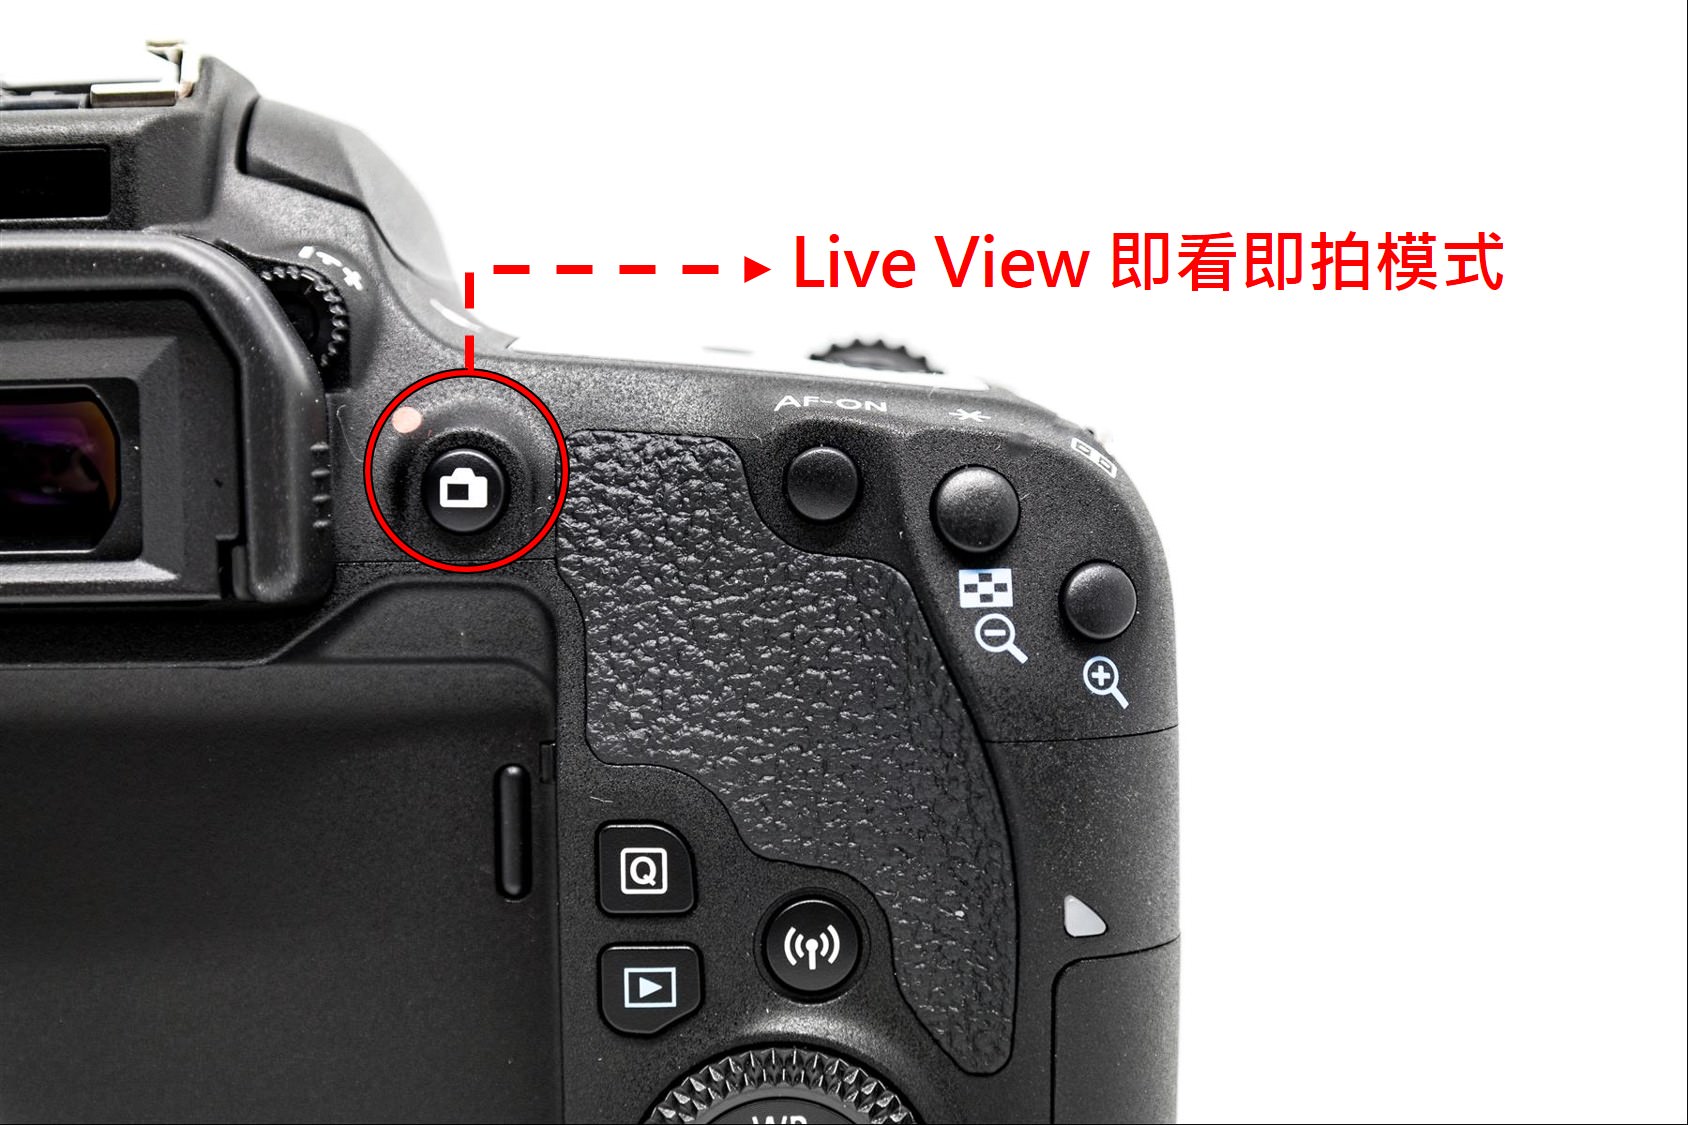 [Canon 77D 教學手冊] 第 03 篇 – Dual Pixel CMOS AF 雙像素對焦介紹